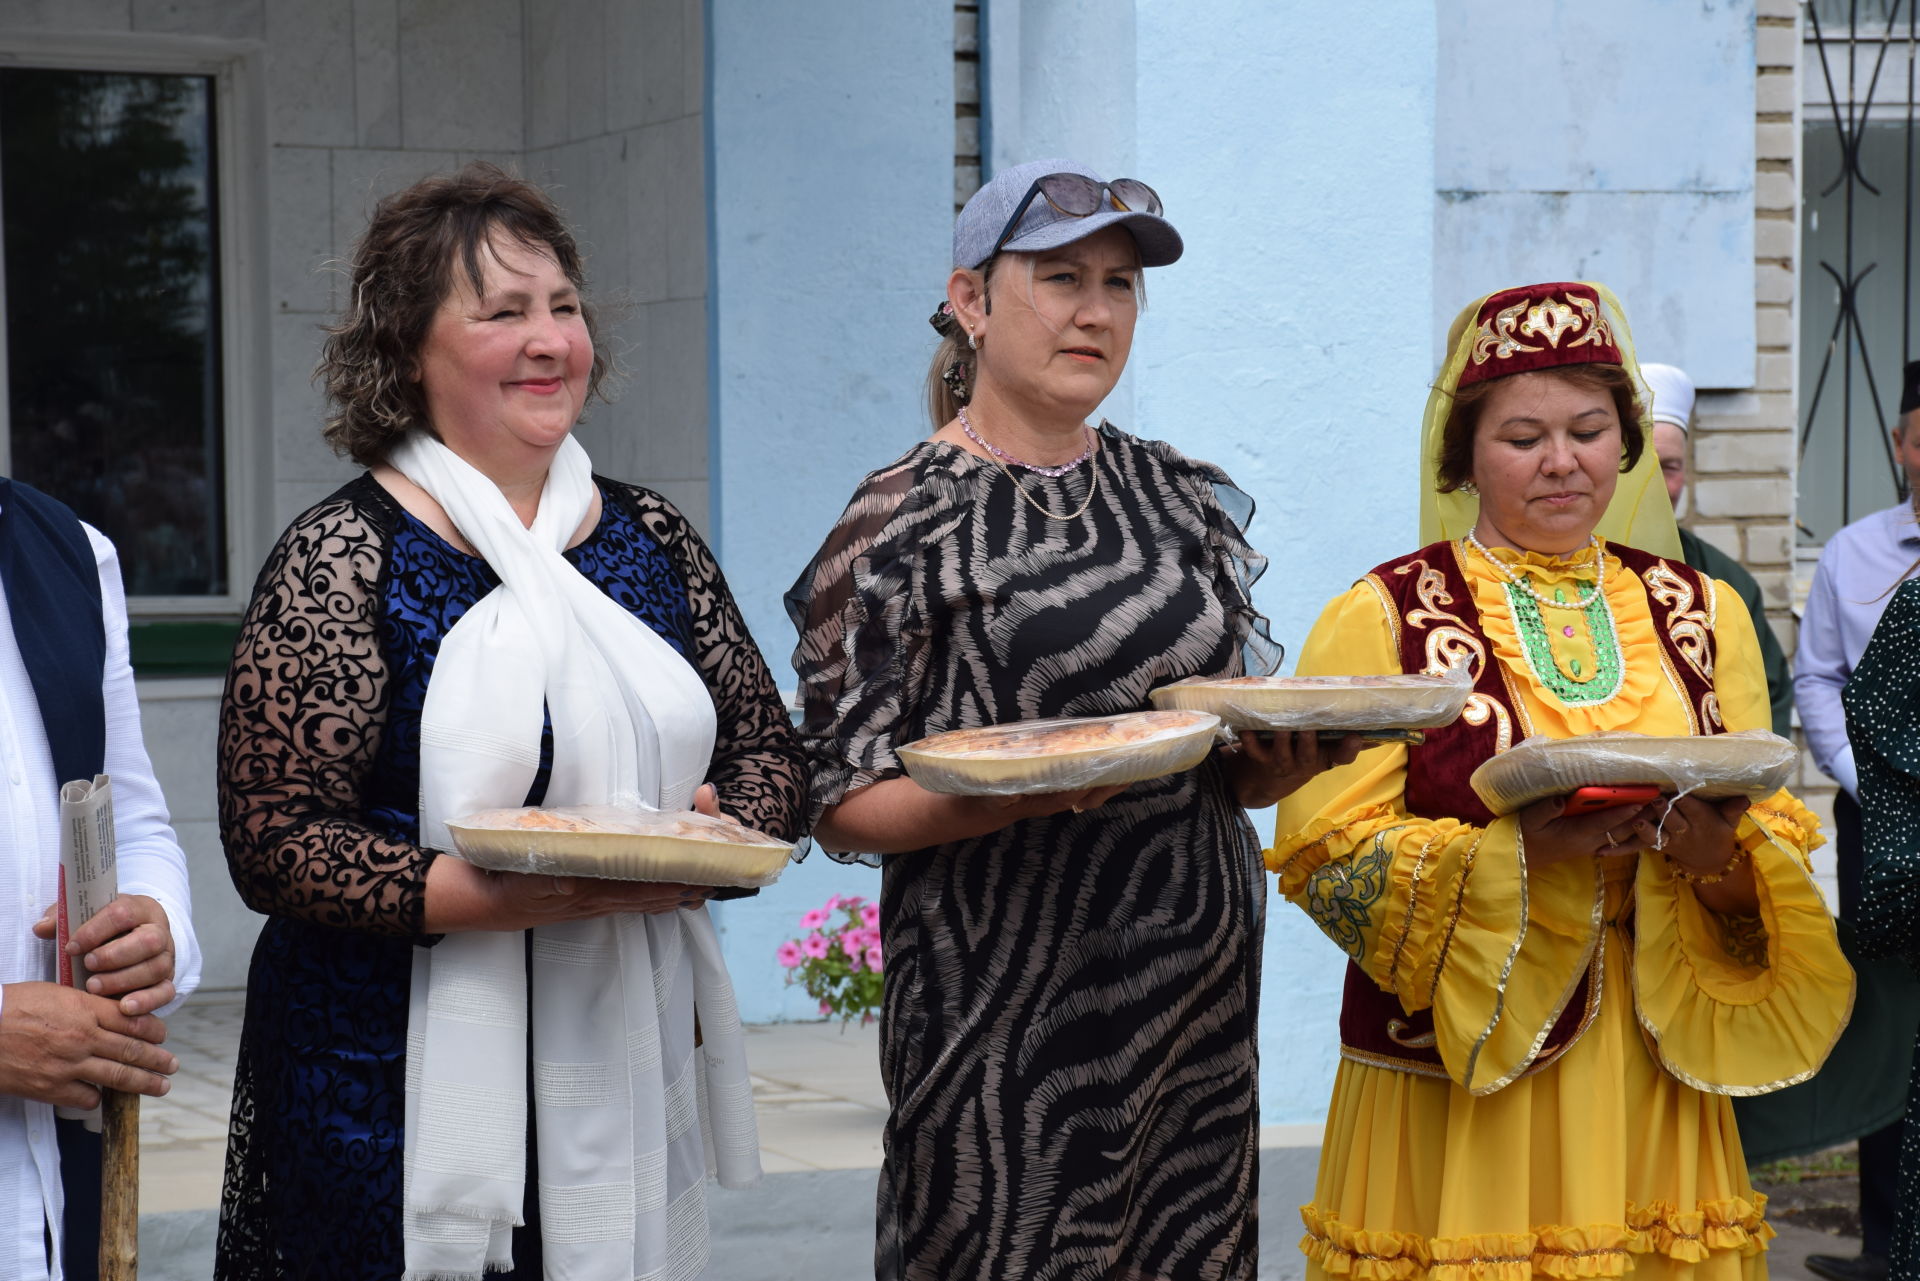 Деревня Ахметово отмечает 100-летний юбилей